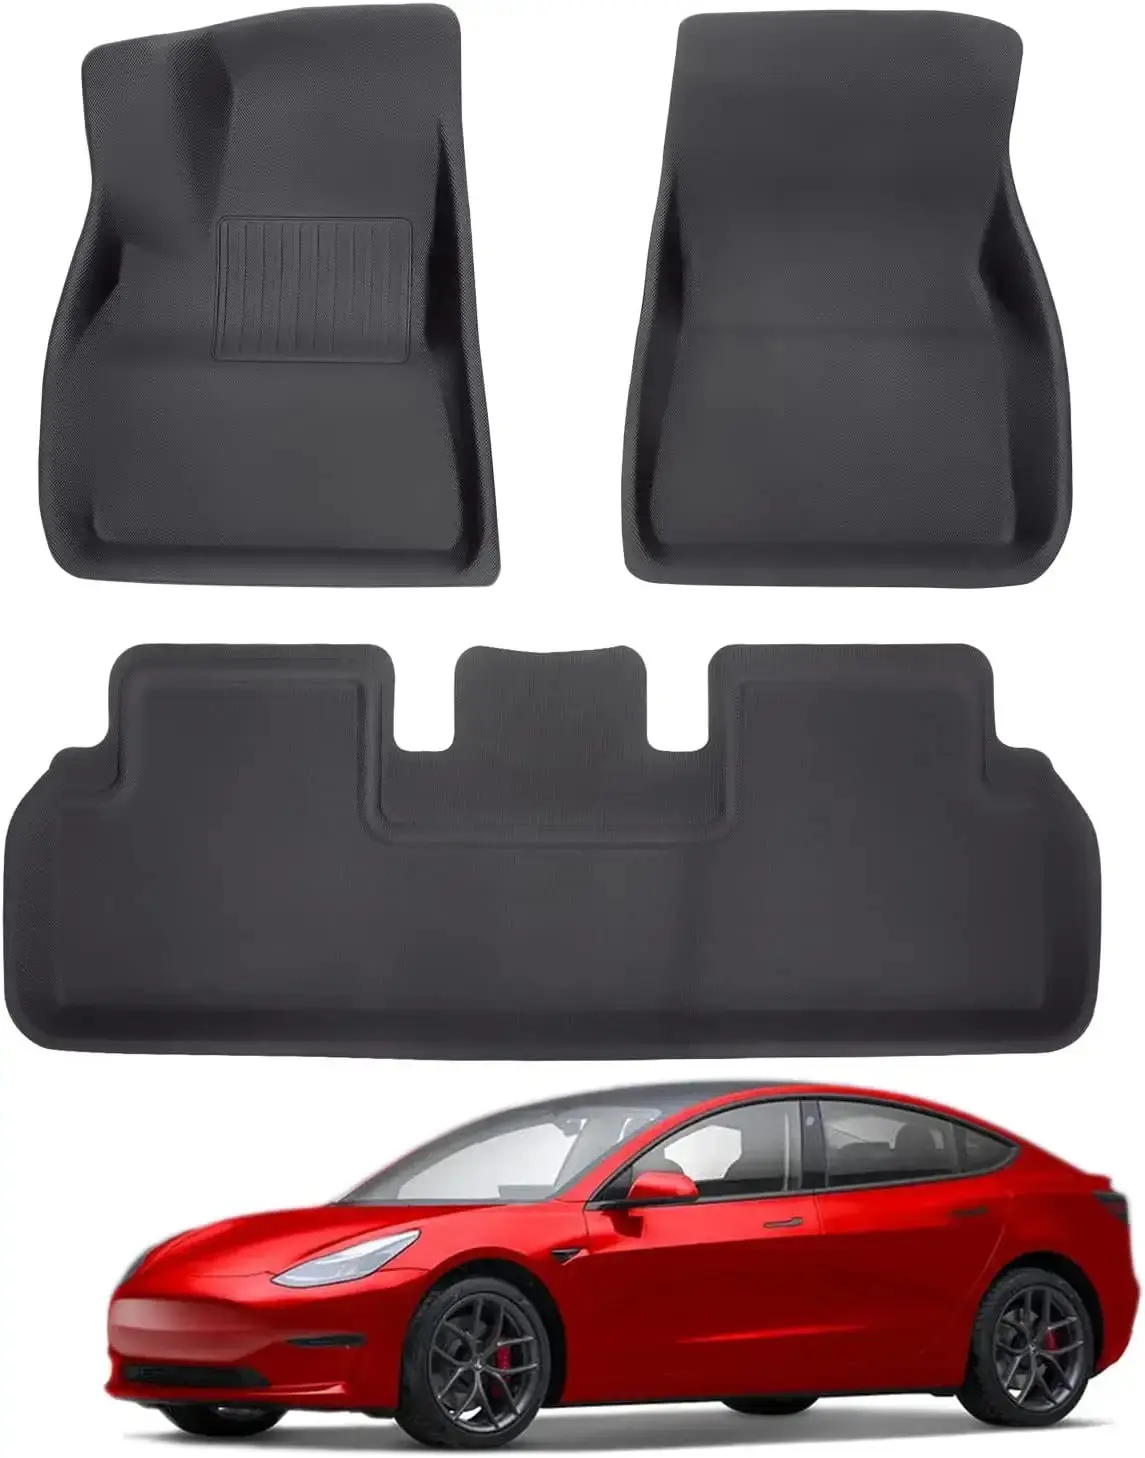 Tesla Auto prix d'usine tapis de voiture amélioré revêtements de sol imperméables uni XPE noir 3 pièces tapis de sol pour Tesla modèle 3